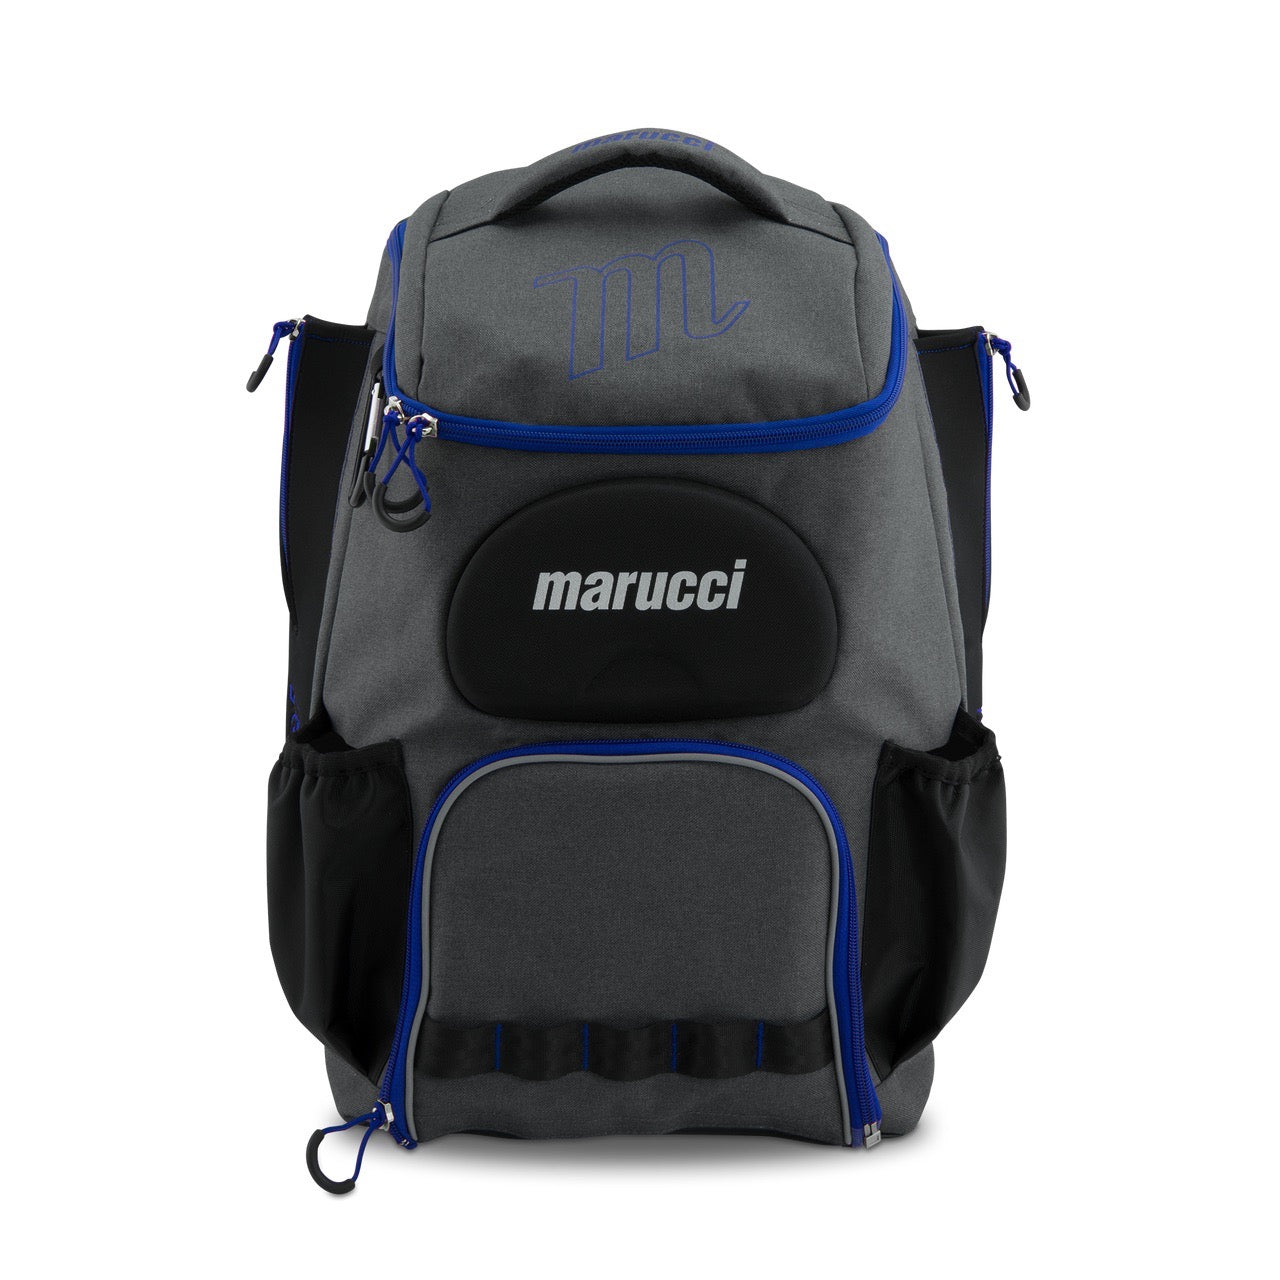 Marucci Charge Bat Pack Gray/Royal Blue